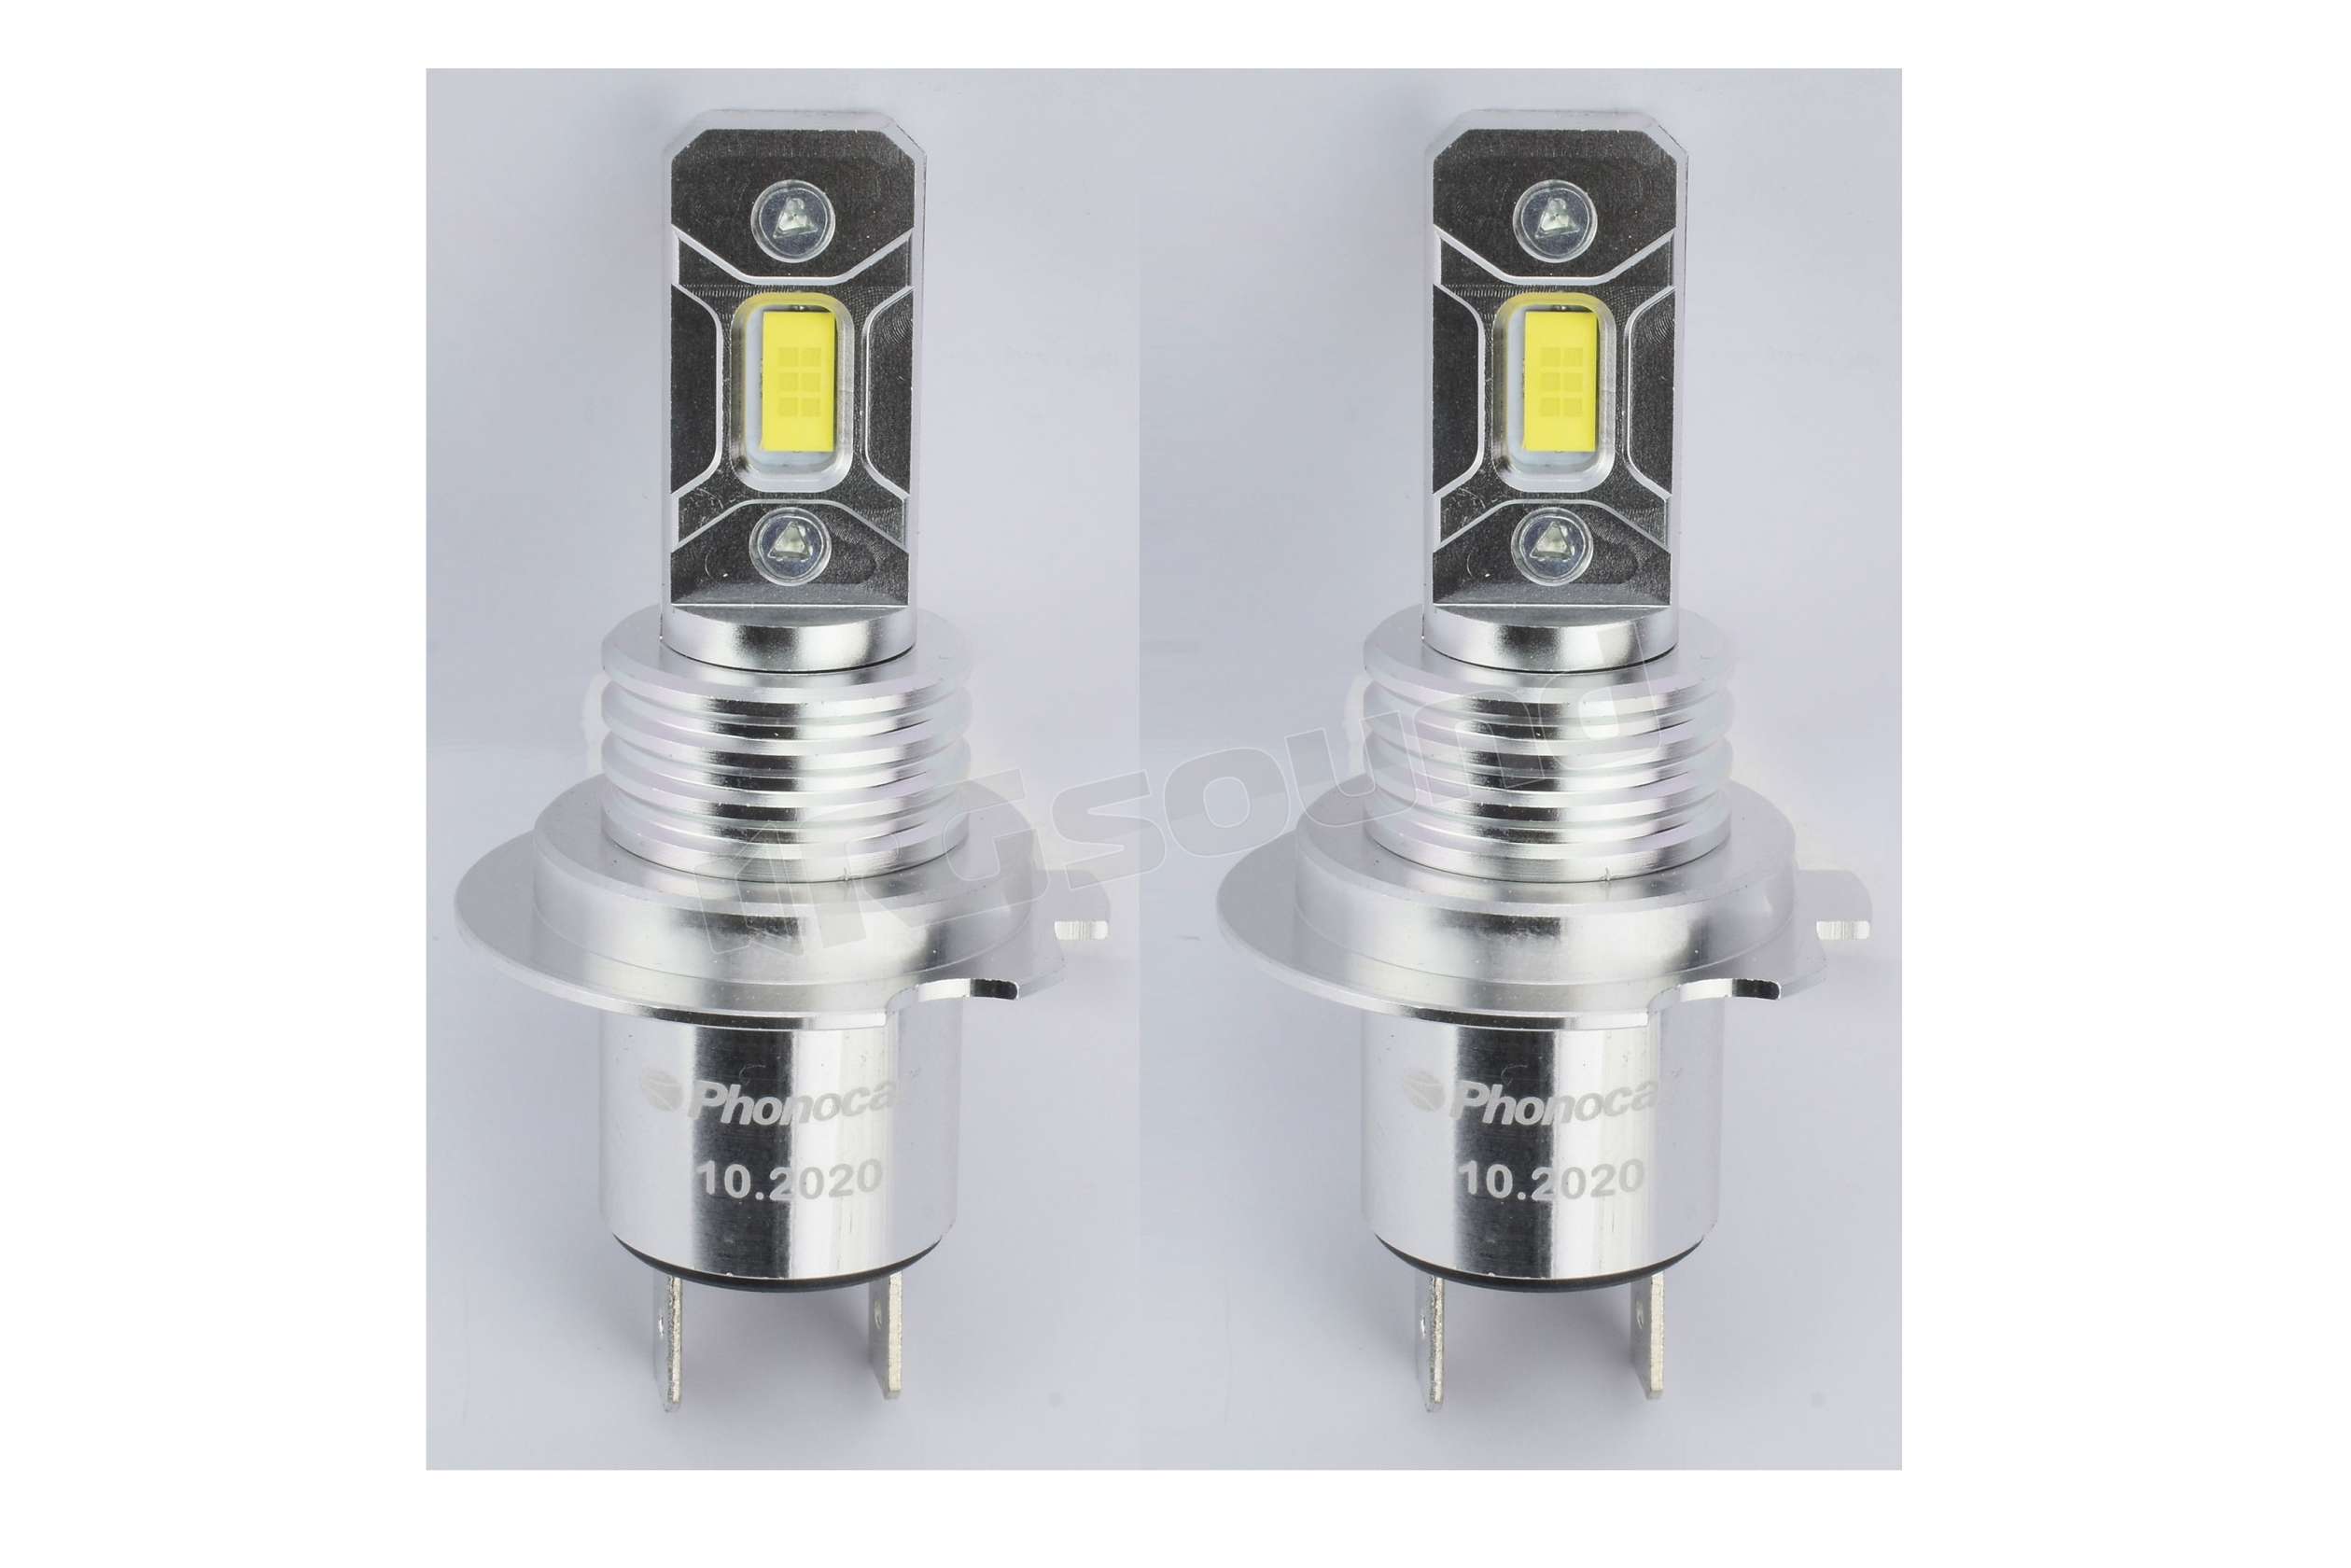 Phonocar 075573 lampade LED H7/H18 installazione semplice e veloce - C